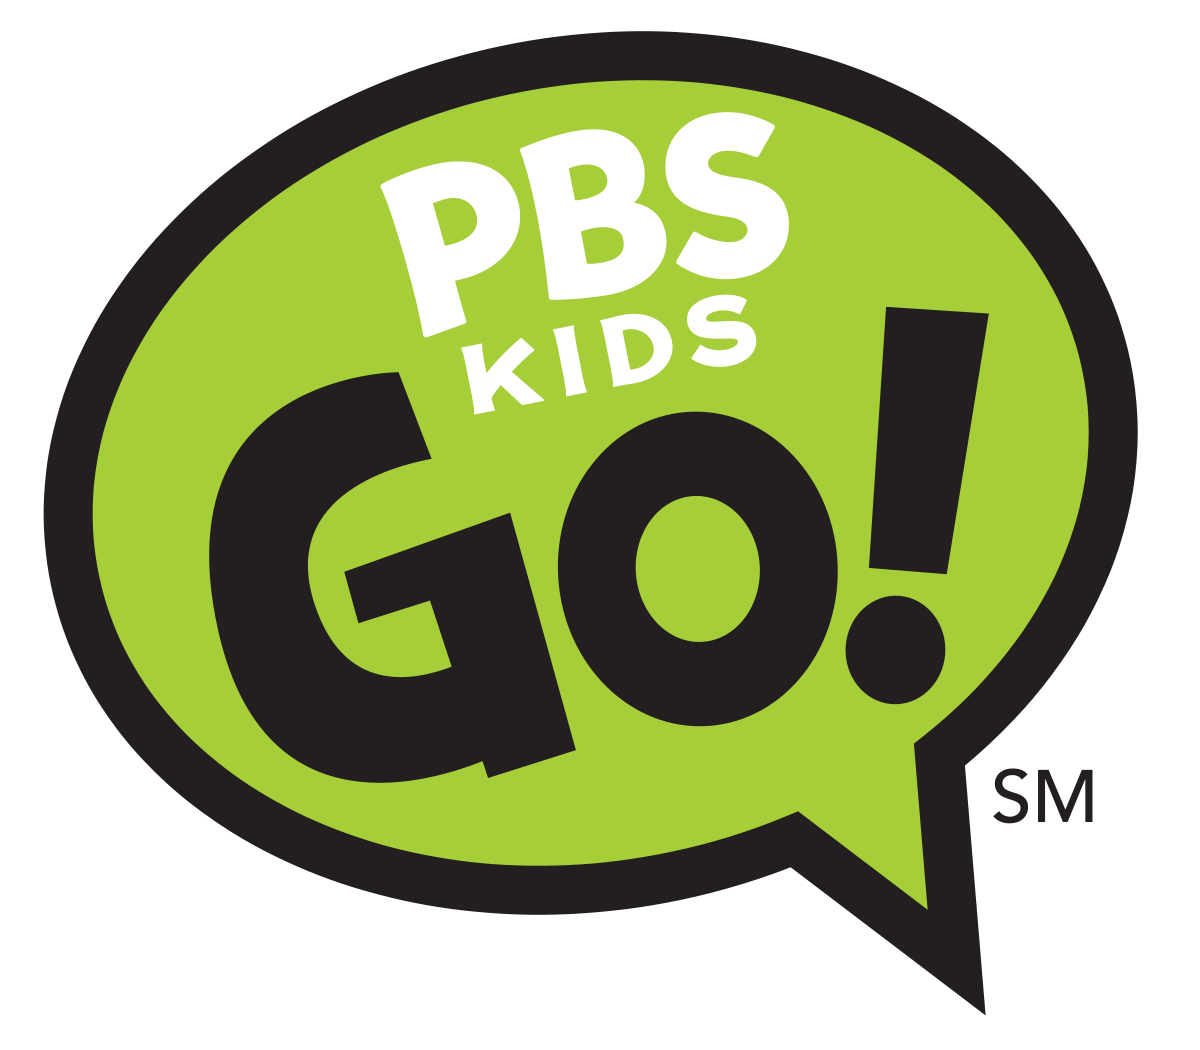 PBS KIDS Logo - PBS Kids Go!